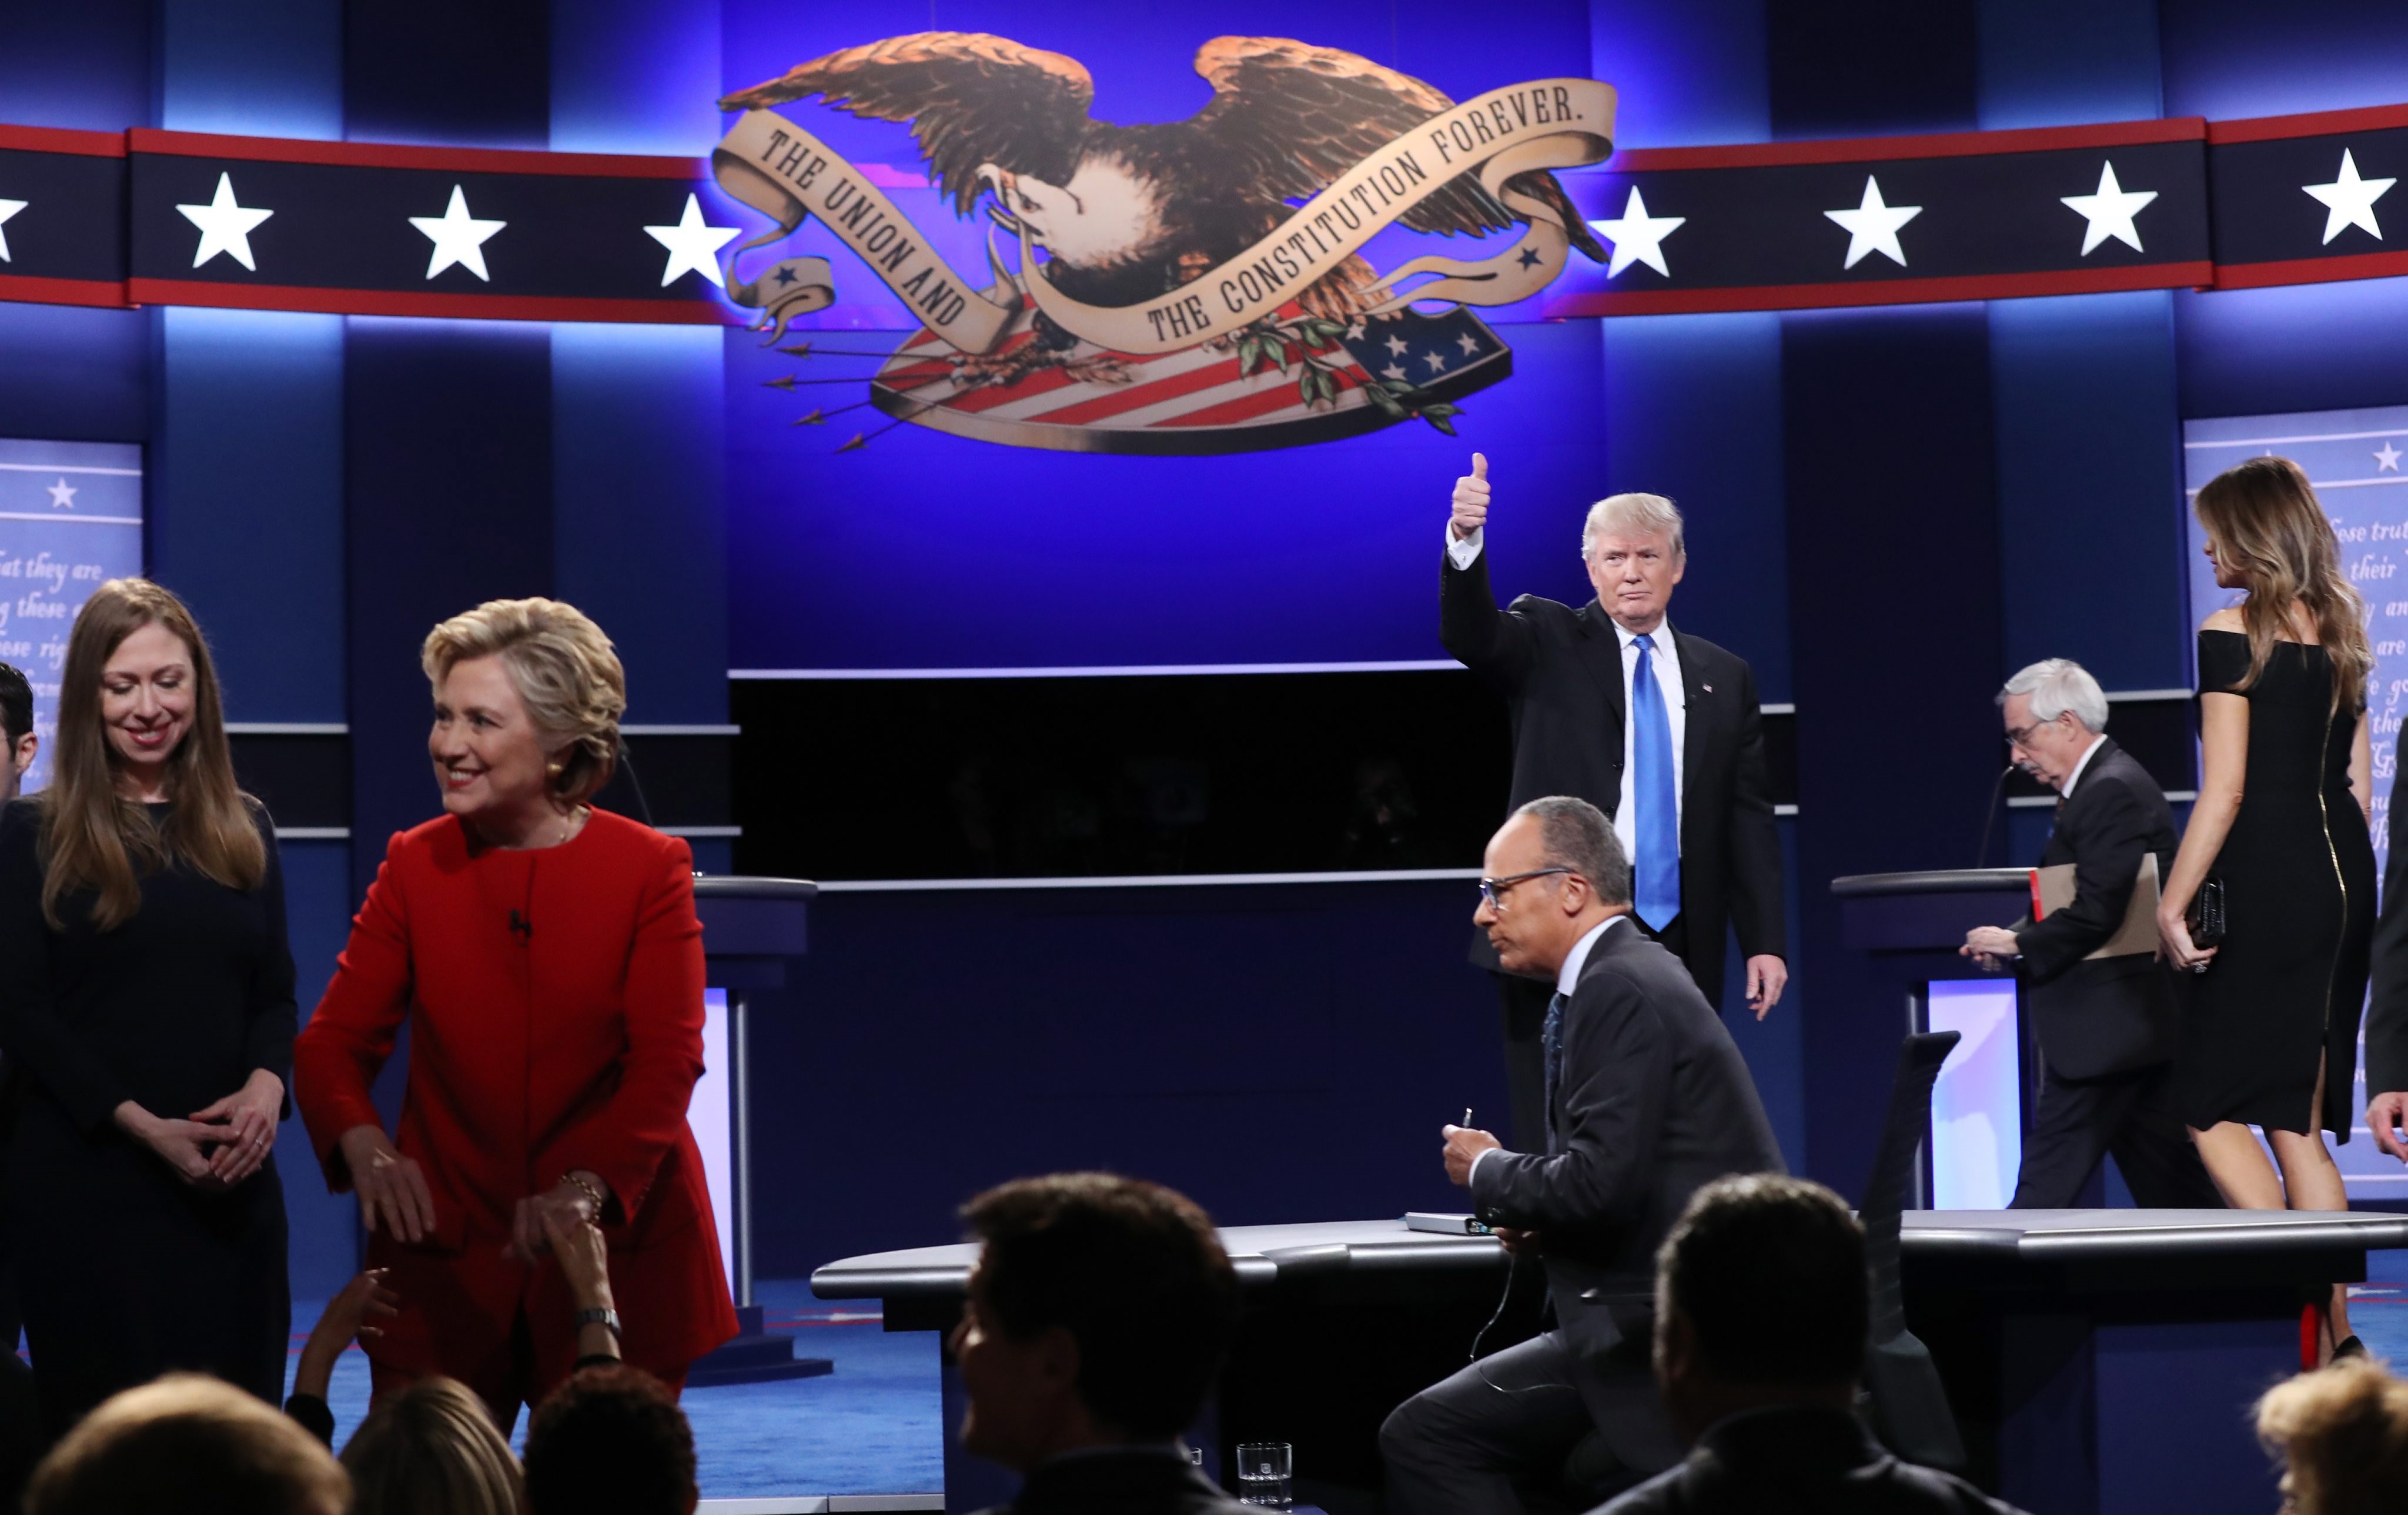 С учтиво ръкостискане започна първият телевизионен дебат по Си Ен Ен между двамата непримирими съперници за поста президент на САЩ. В крайна сметка обаче зрителите дадоха доверието си на Клинтън - според 62 на сто от тях тя е била по-убедителна. Републиканецът спечели 27 на сто одобрение.